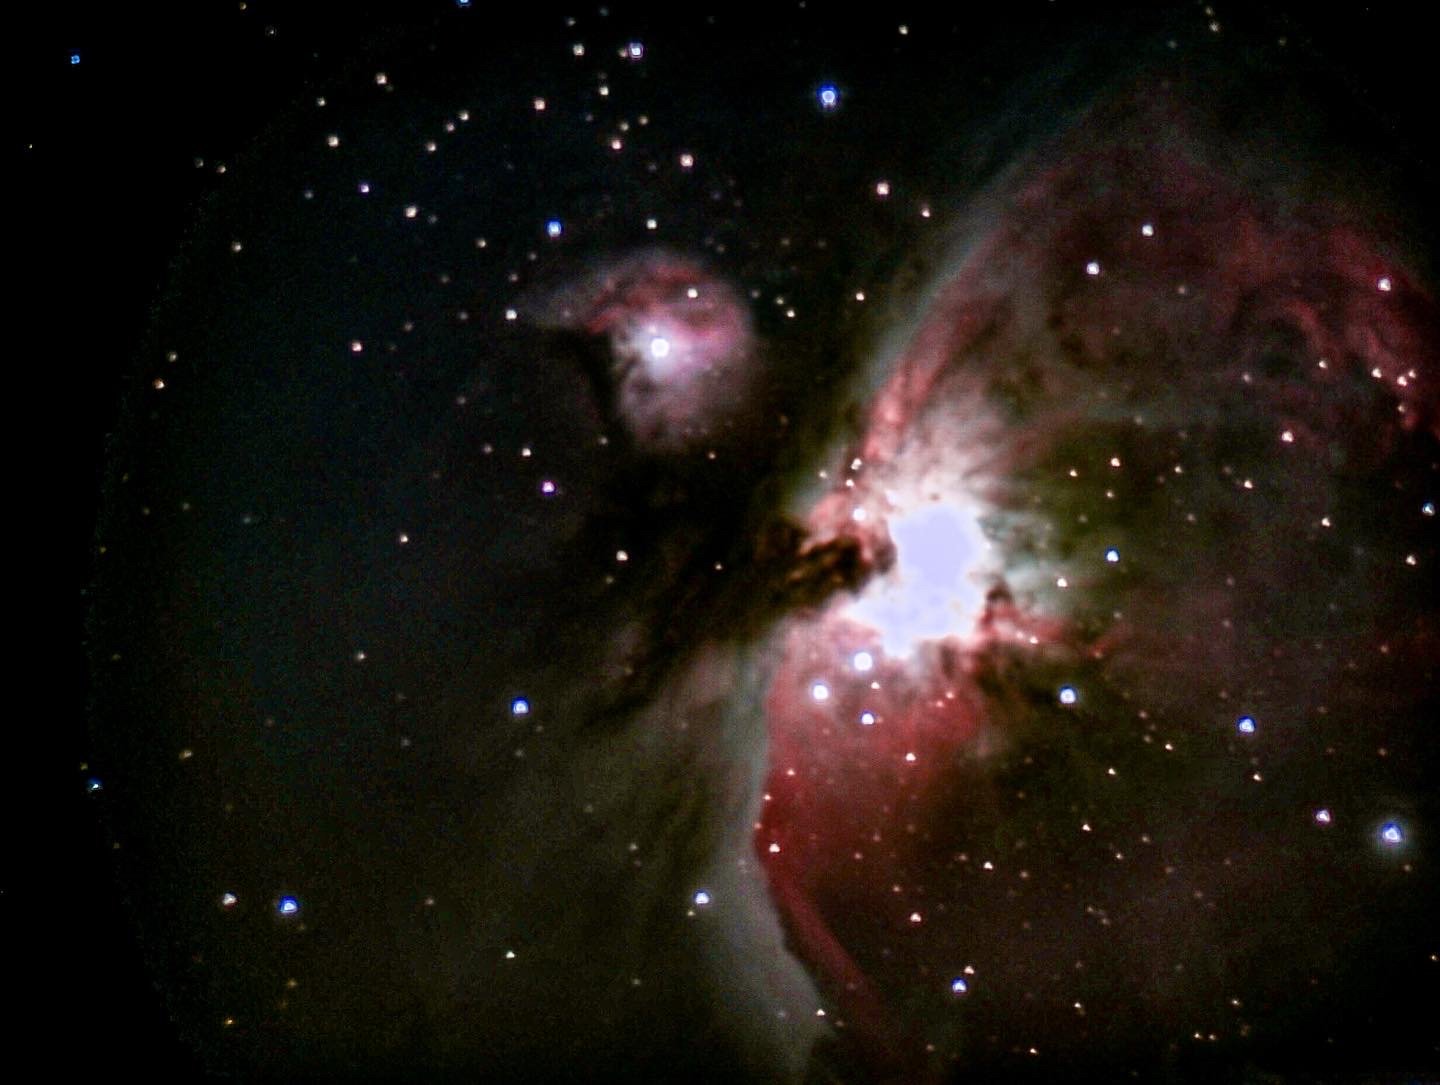 Orion Nebula no filters 50 mins.jpg